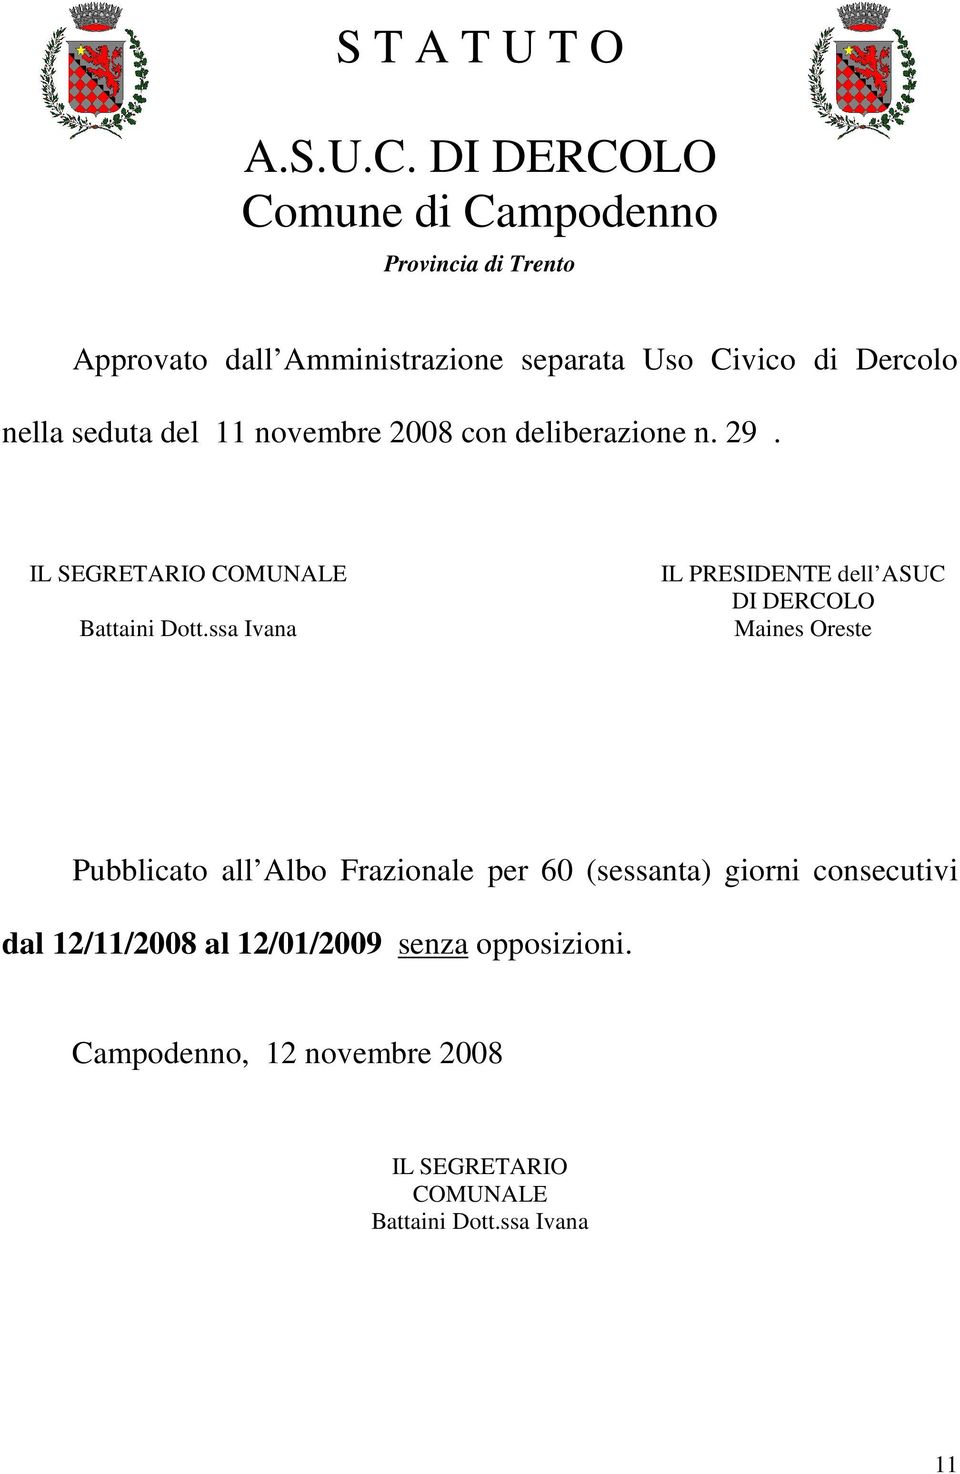 seduta del 11 novembre 2008 con deliberazione n. 29. IL SEGRETARIO COMUNALE Battaini Dott.